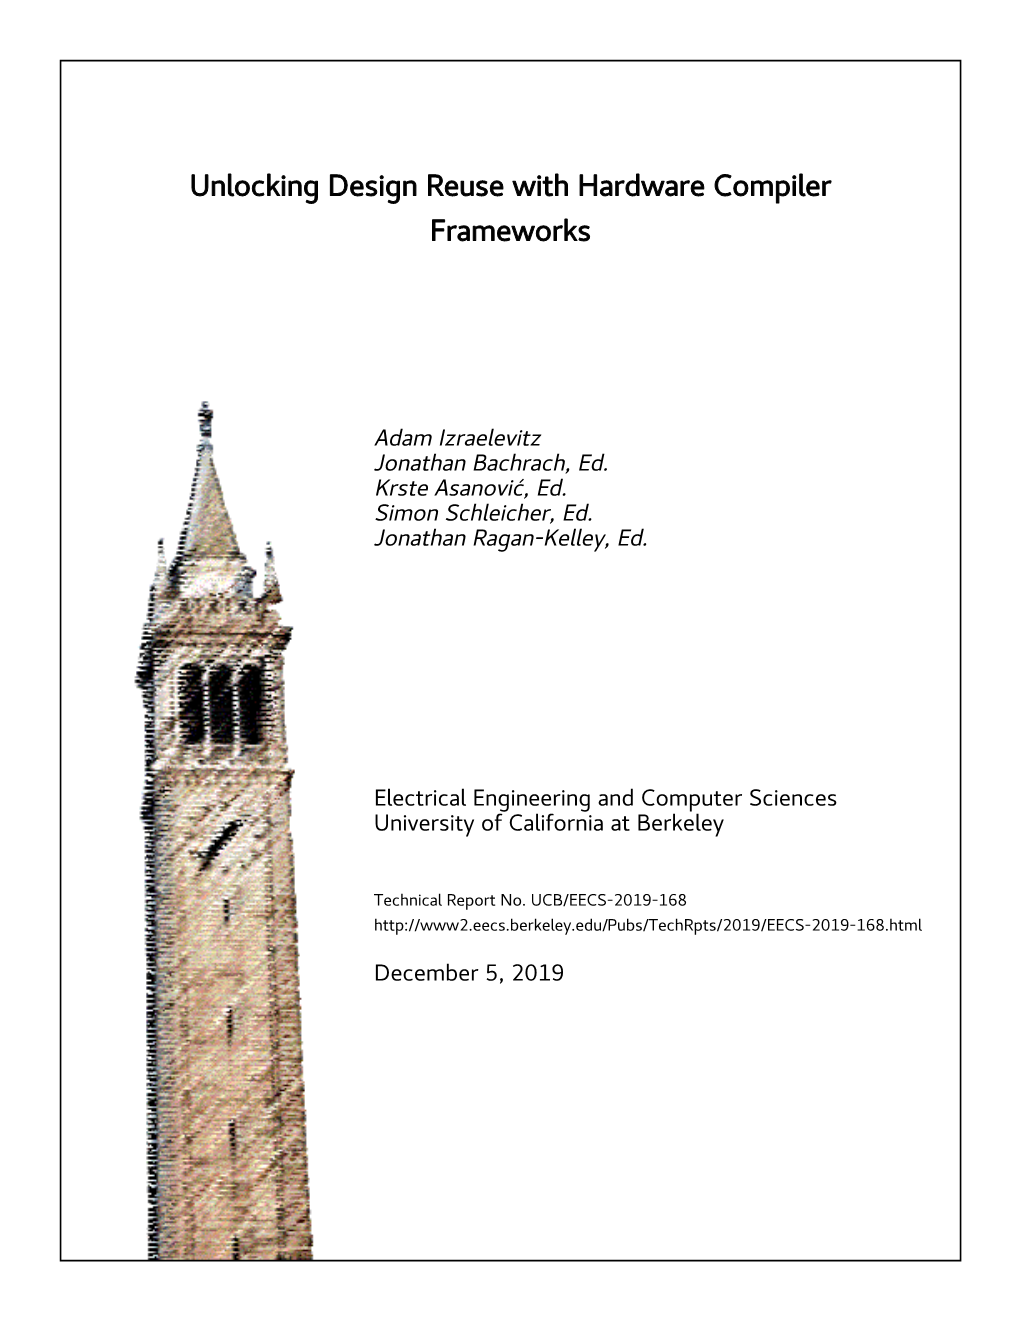 Unlocking Design Reuse with Hardware Compiler Frameworks